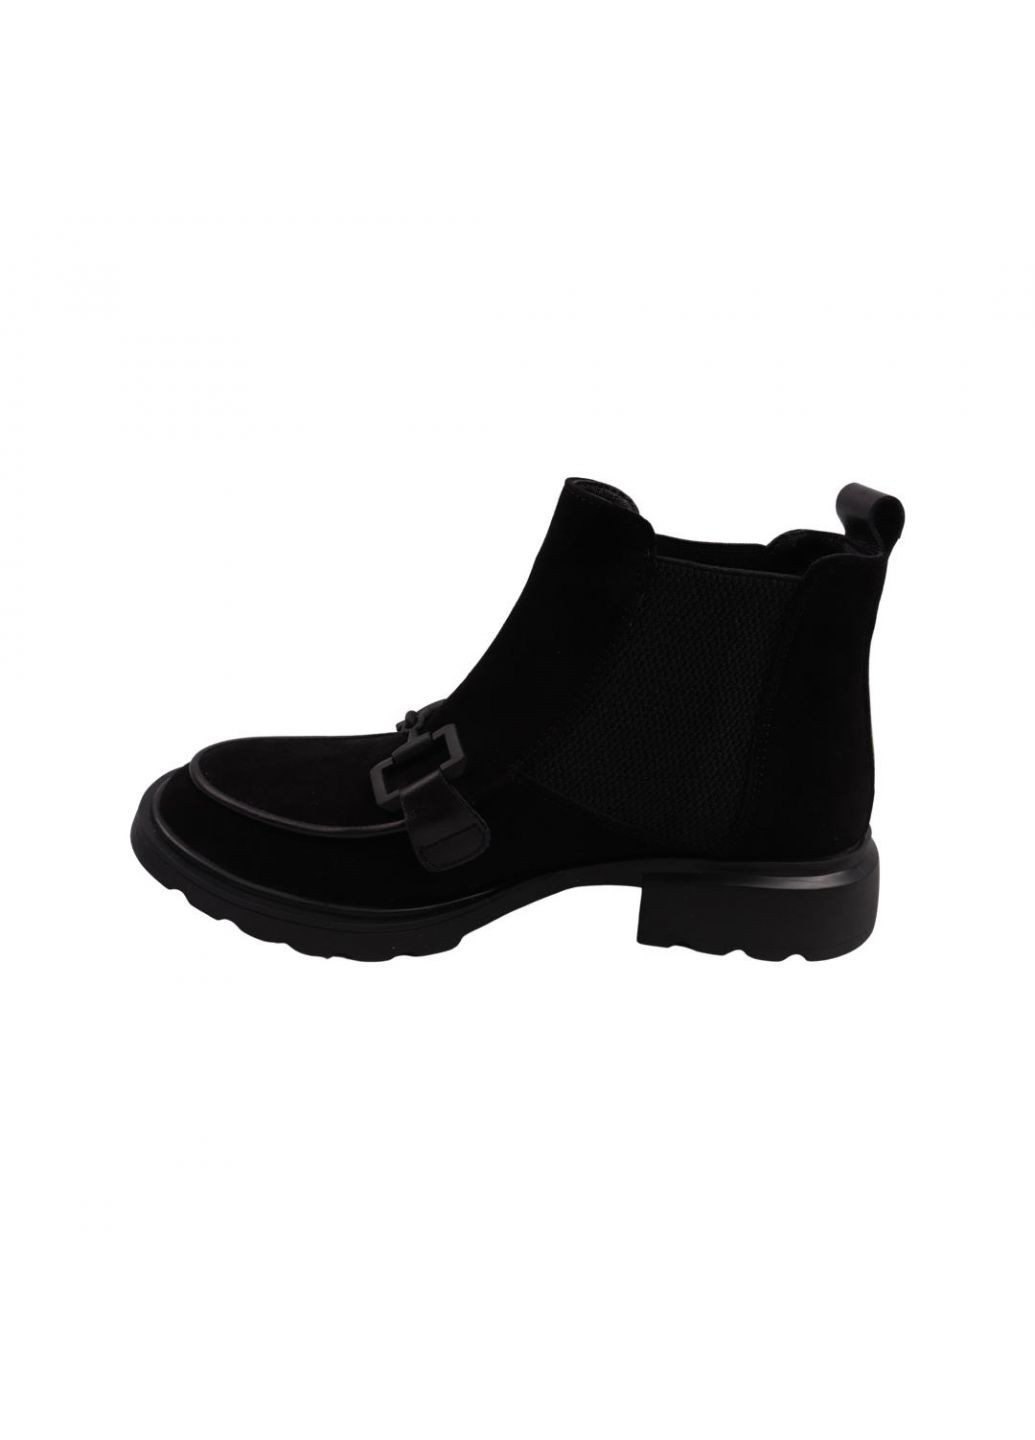 ботинки женские черные натуральная замша Olli